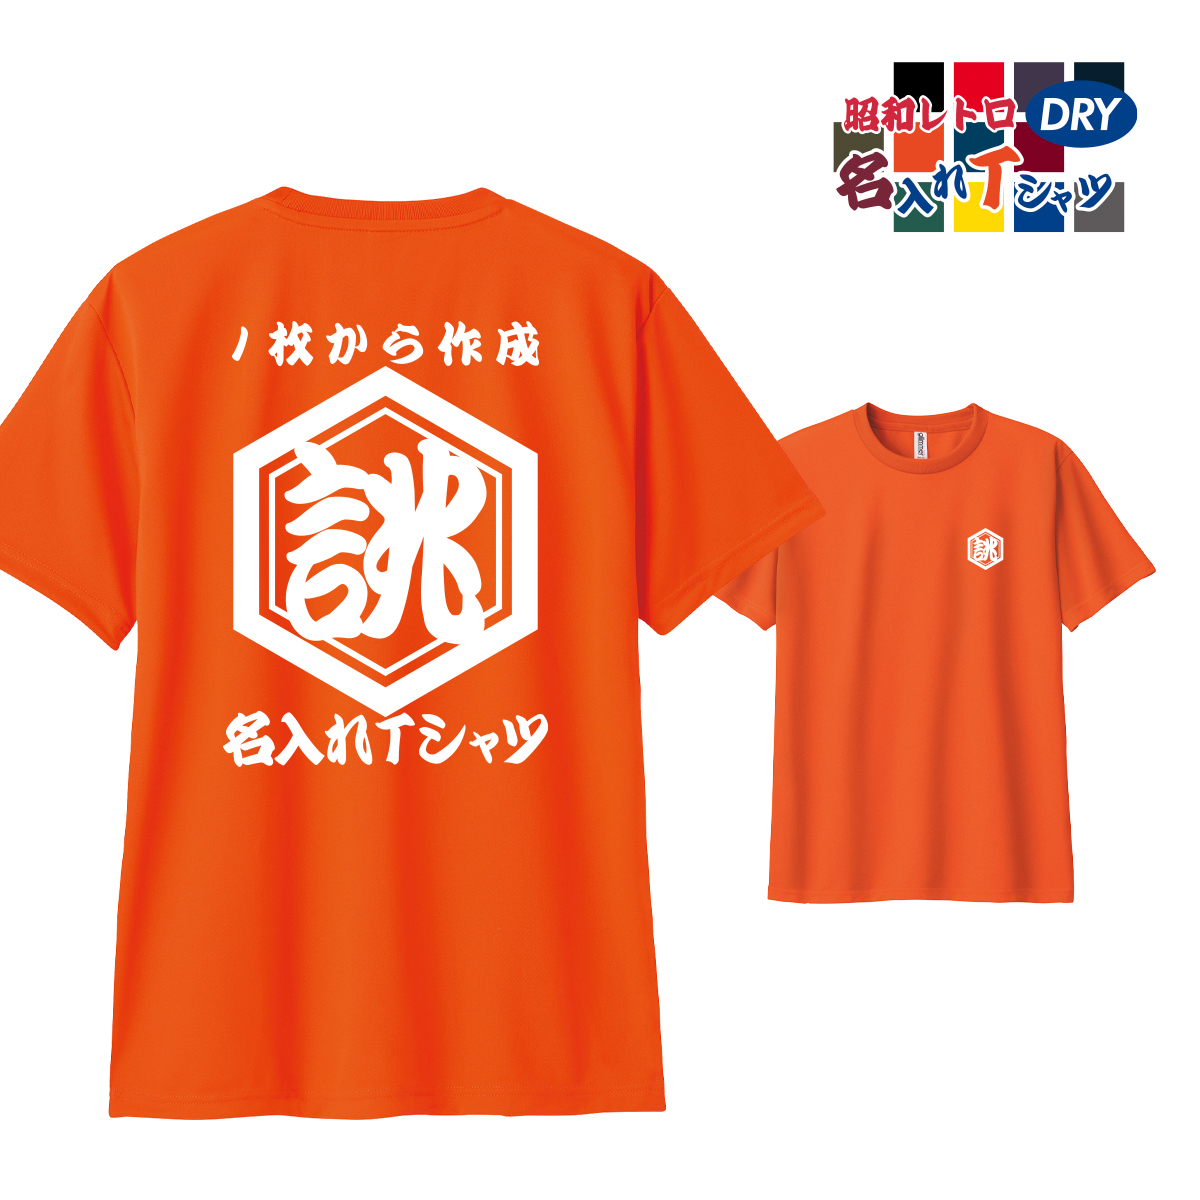 大きいサイズ オリジナル ティーシャツ 名入れ プリント 1枚から 作成 和風  ユニホーム 飲食店...